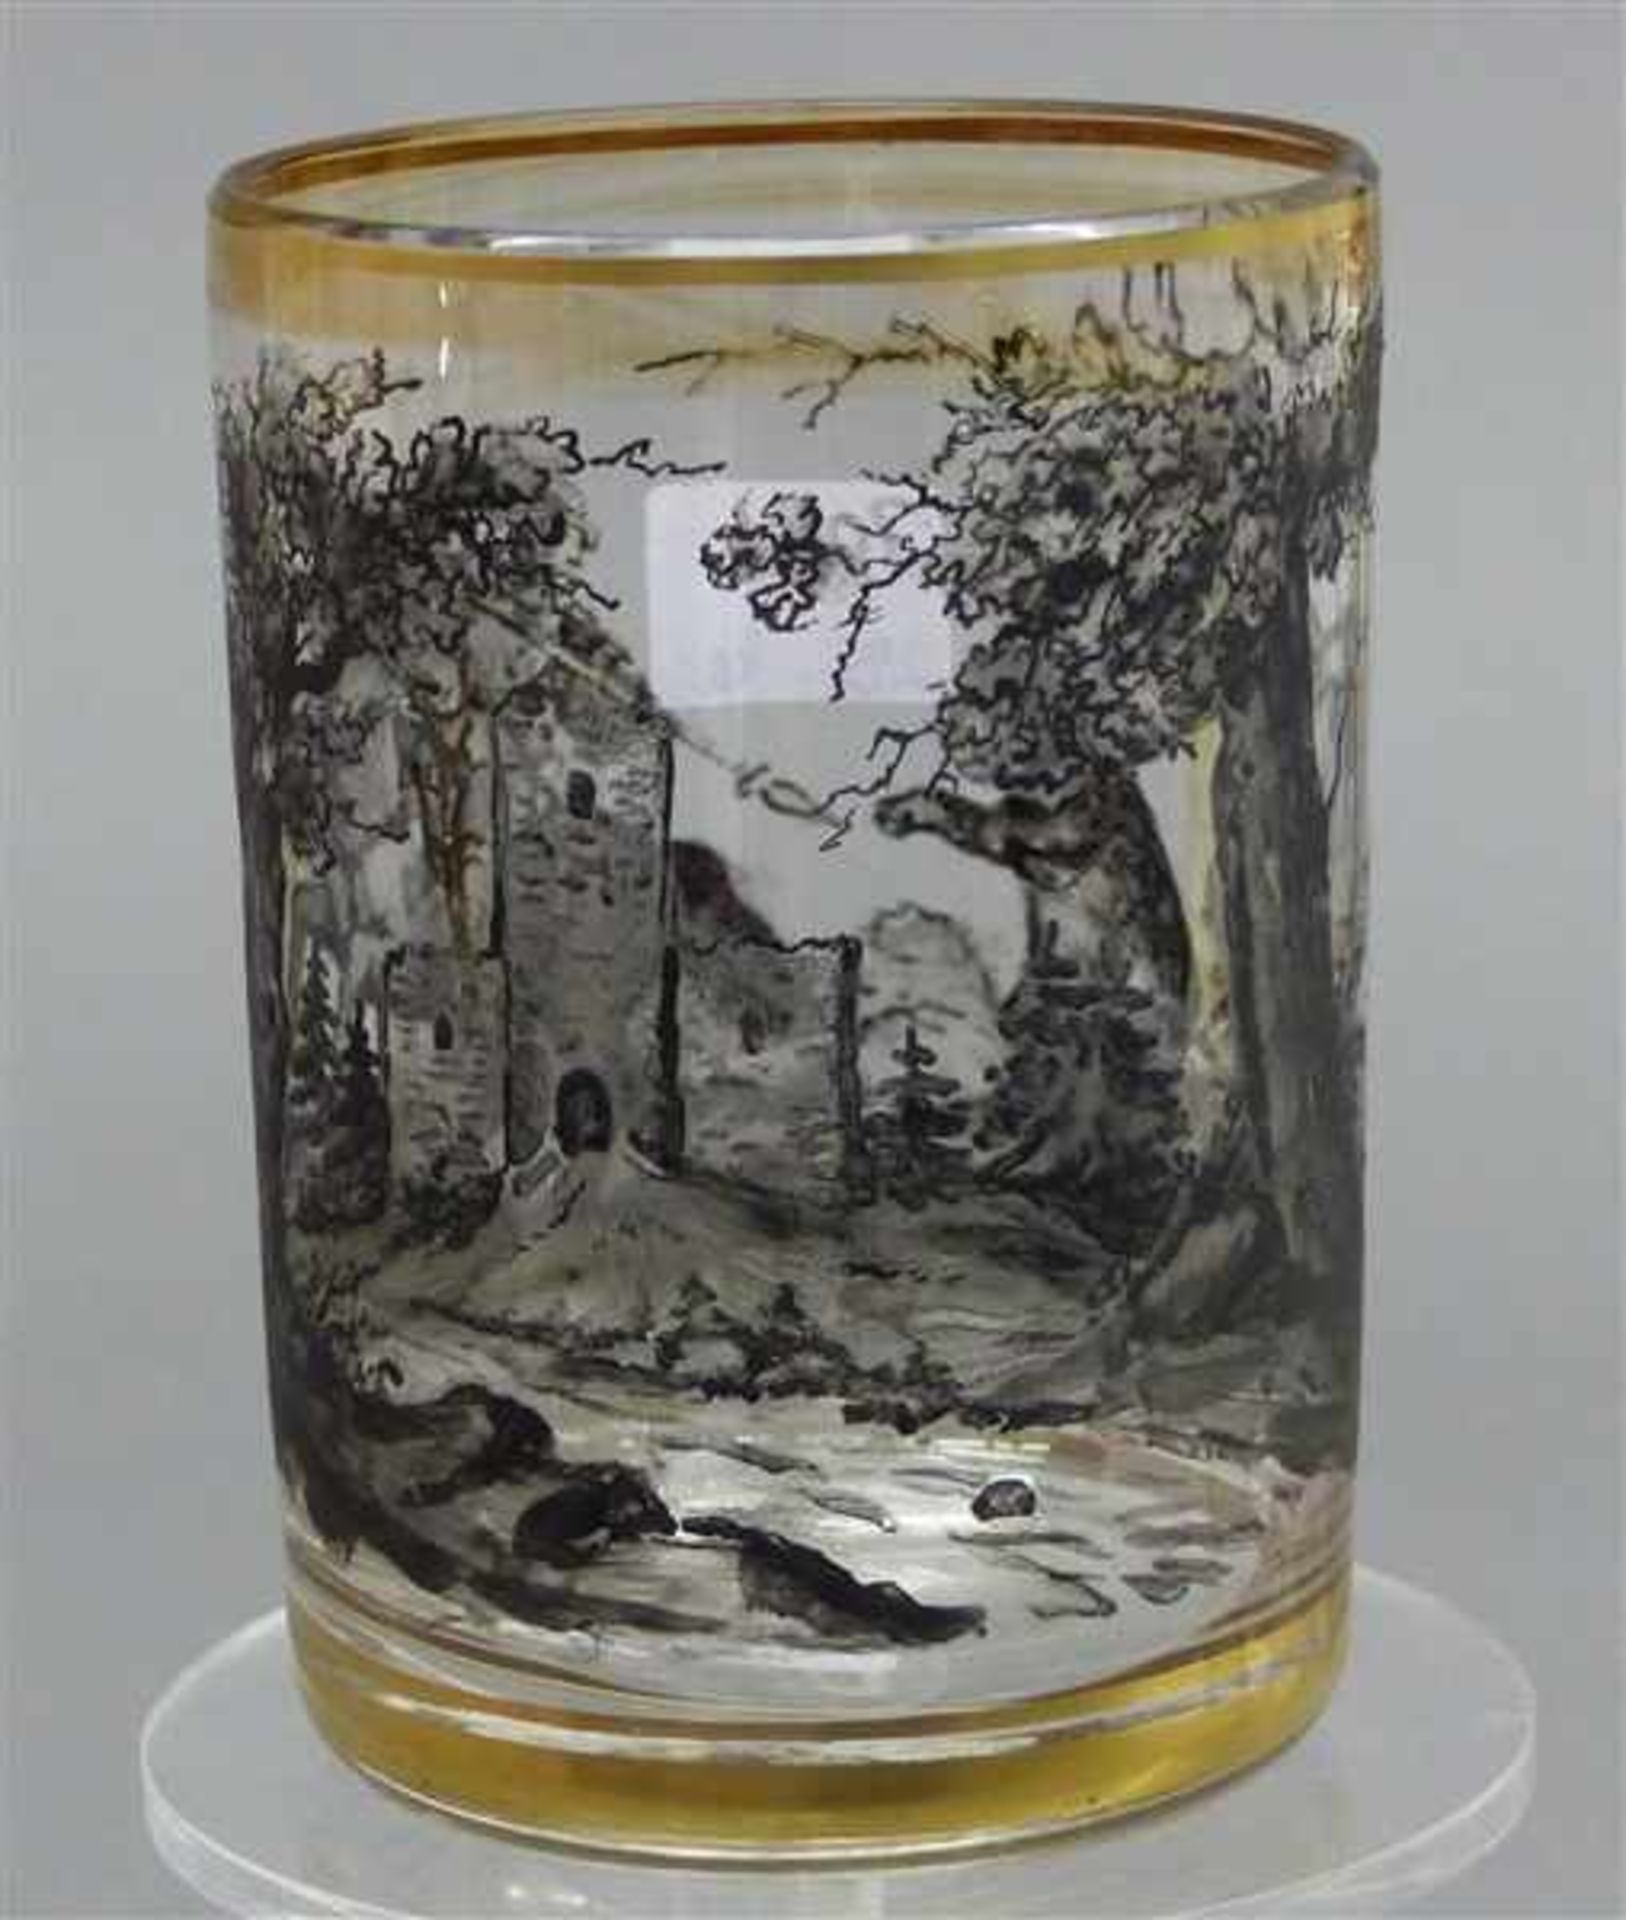 Glasbecherschwarzer Landschafts- und Jagddekor, Goldrand, um 1920, h 11 cm,